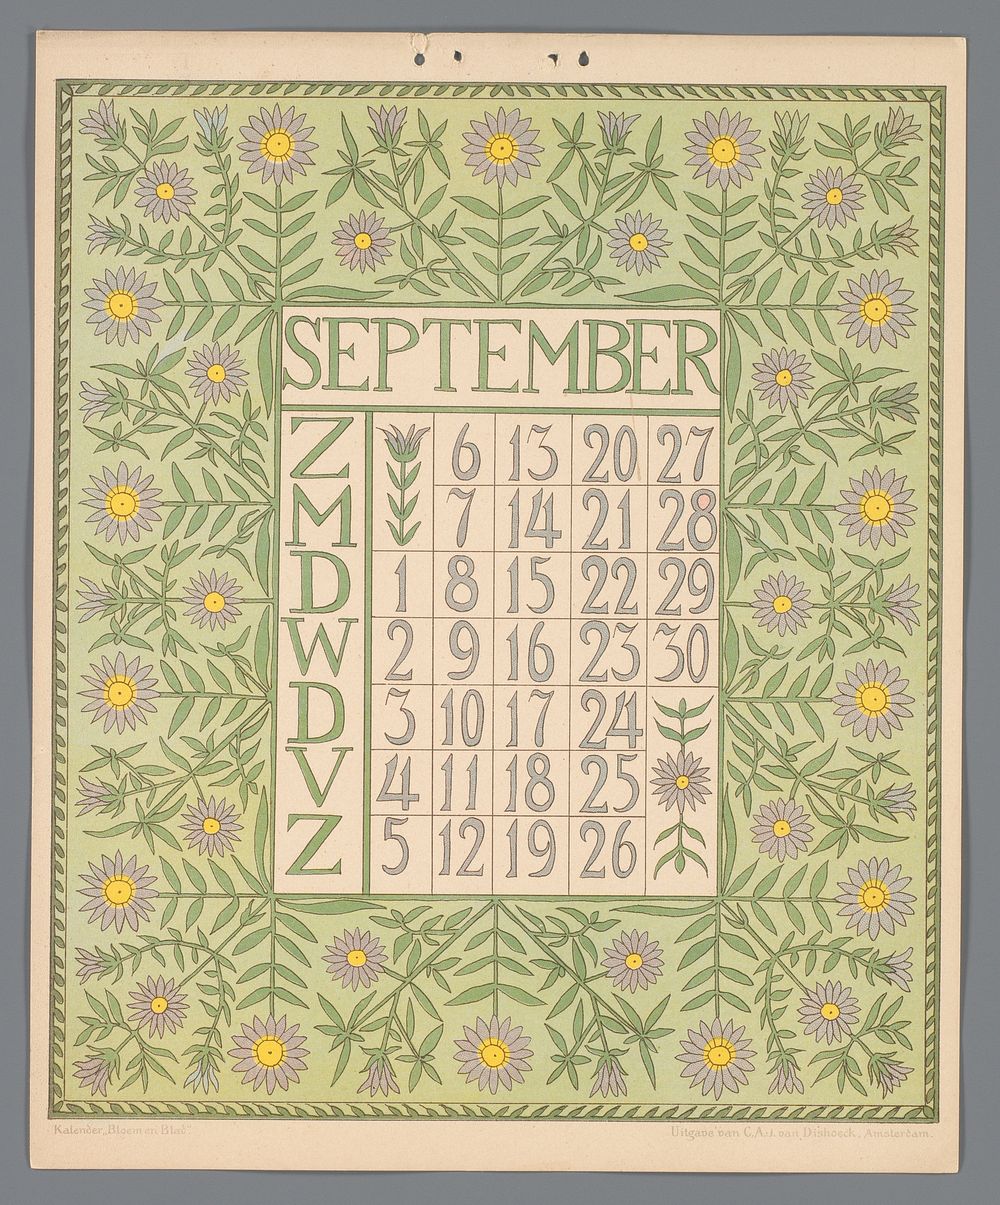 Kalenderblad voor september van de kalender 'Bloem en blad' (c. 1900 - c. 1910) by Gebroeders Braakensiek, Netty van der…